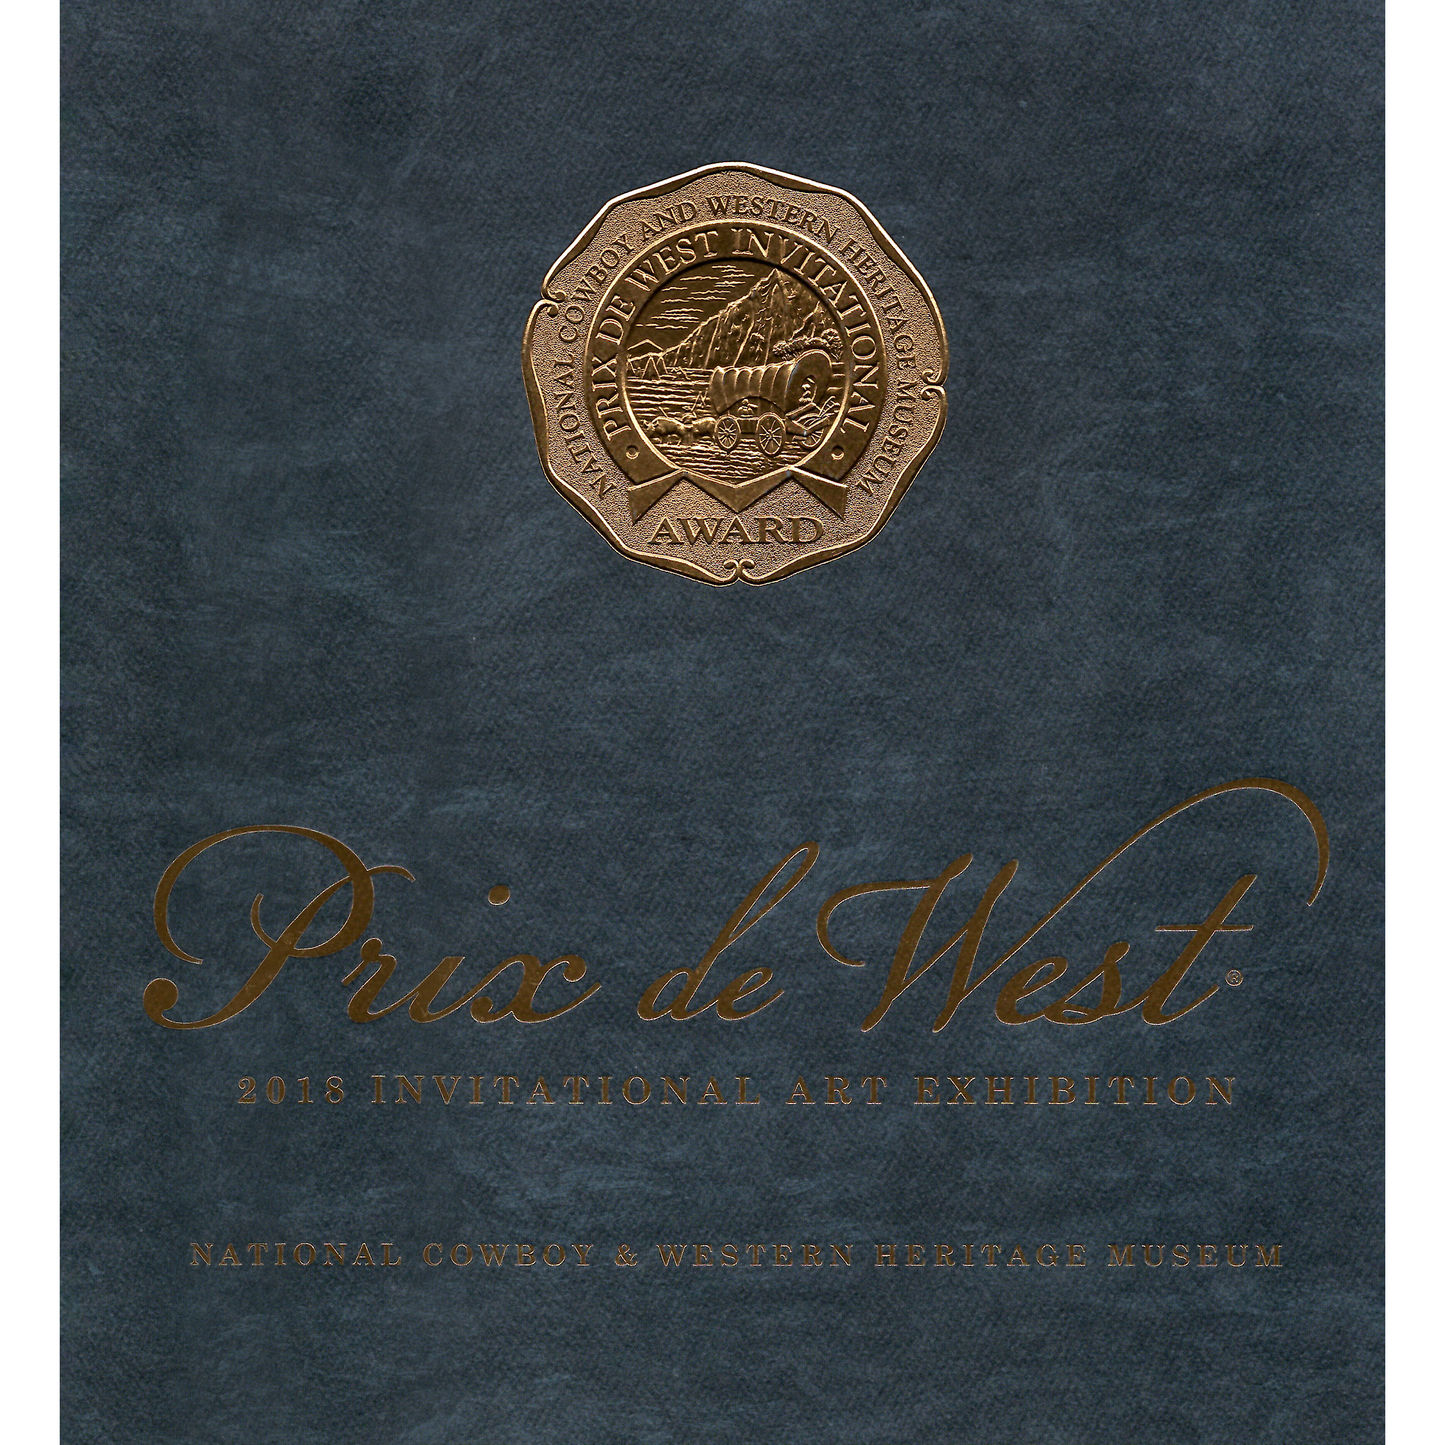 2018 Prix de West Exhibition Catalog